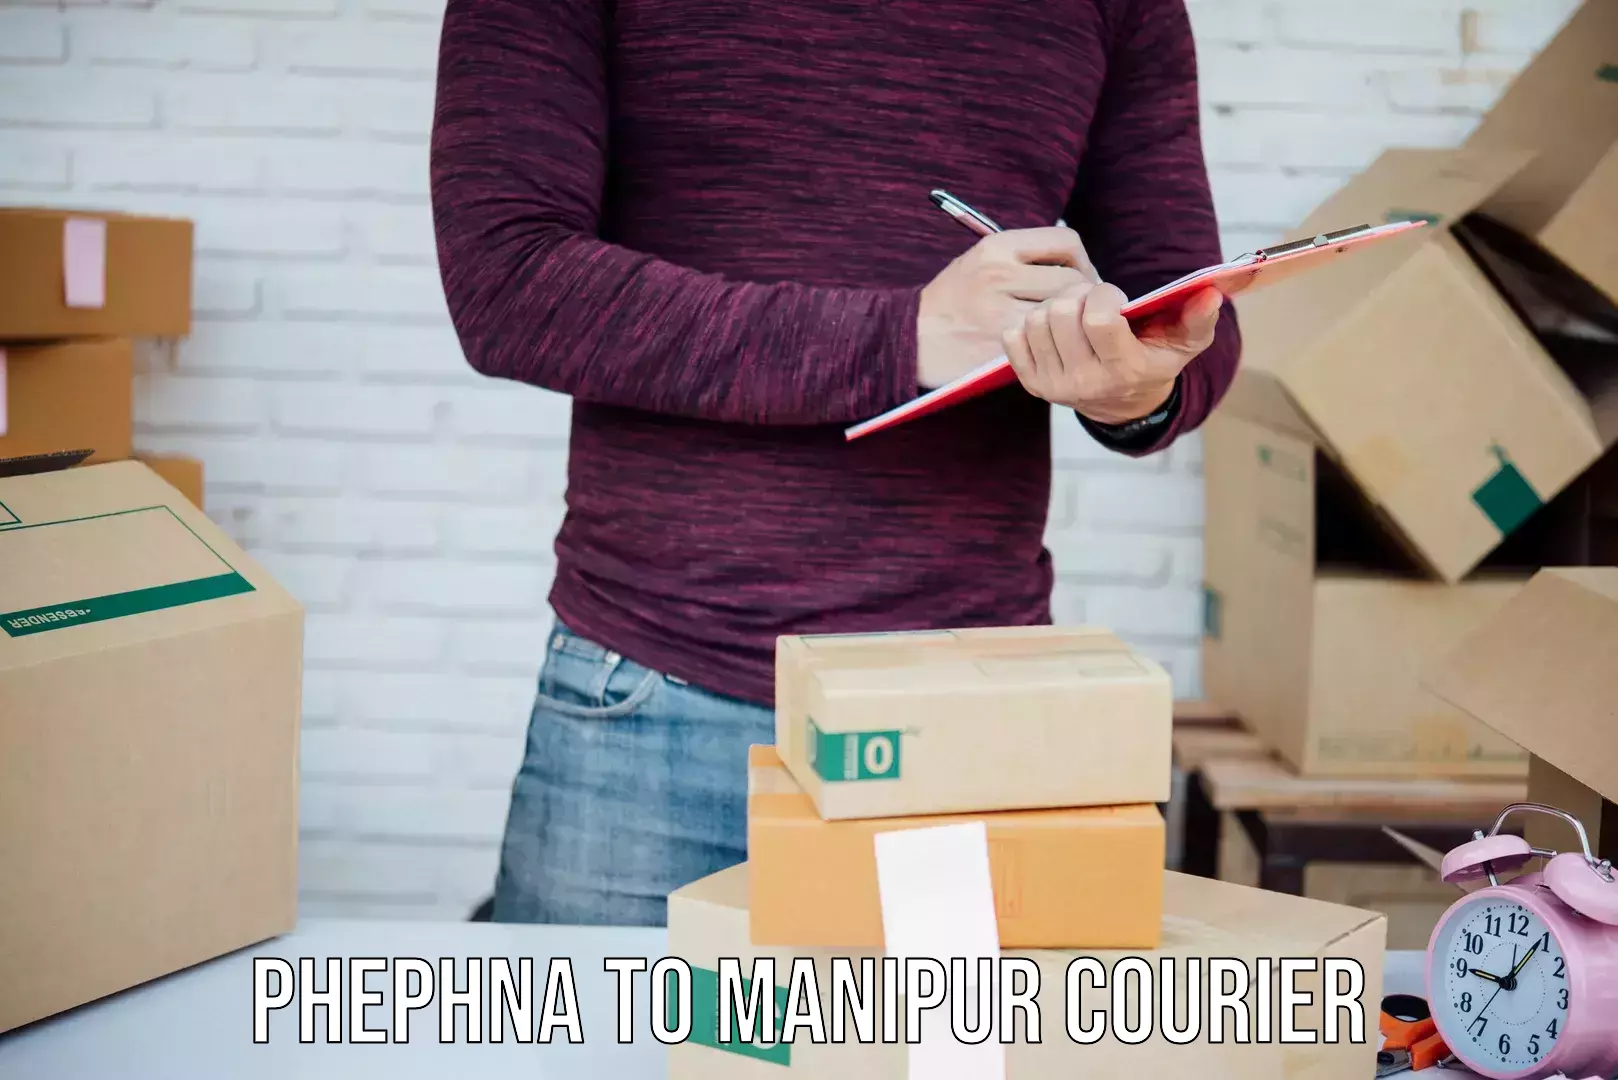 Quick parcel dispatch Phephna to Thoubal